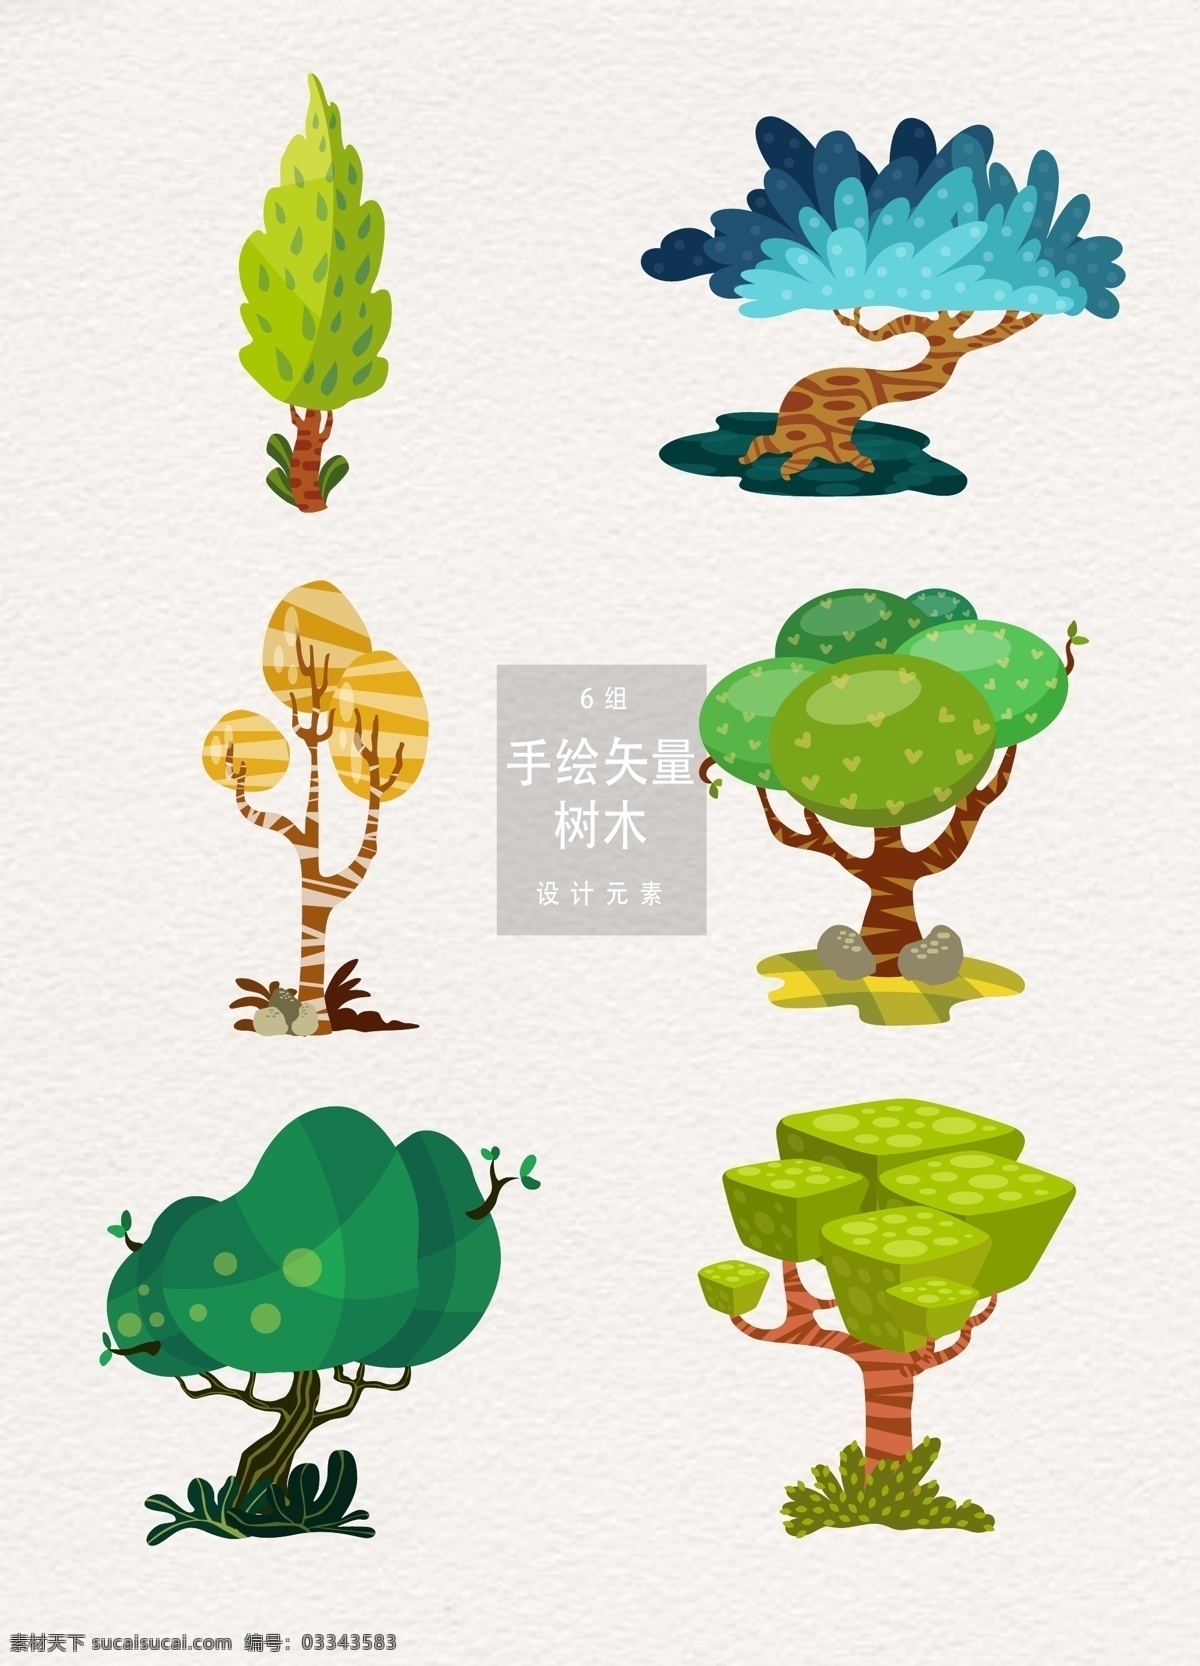 创意 卡通 抽象 树木 插画 元素 夏季 绿树 立夏 夏天 ai素材 树 手绘树木 树木插画 抽象树木 卡通树木